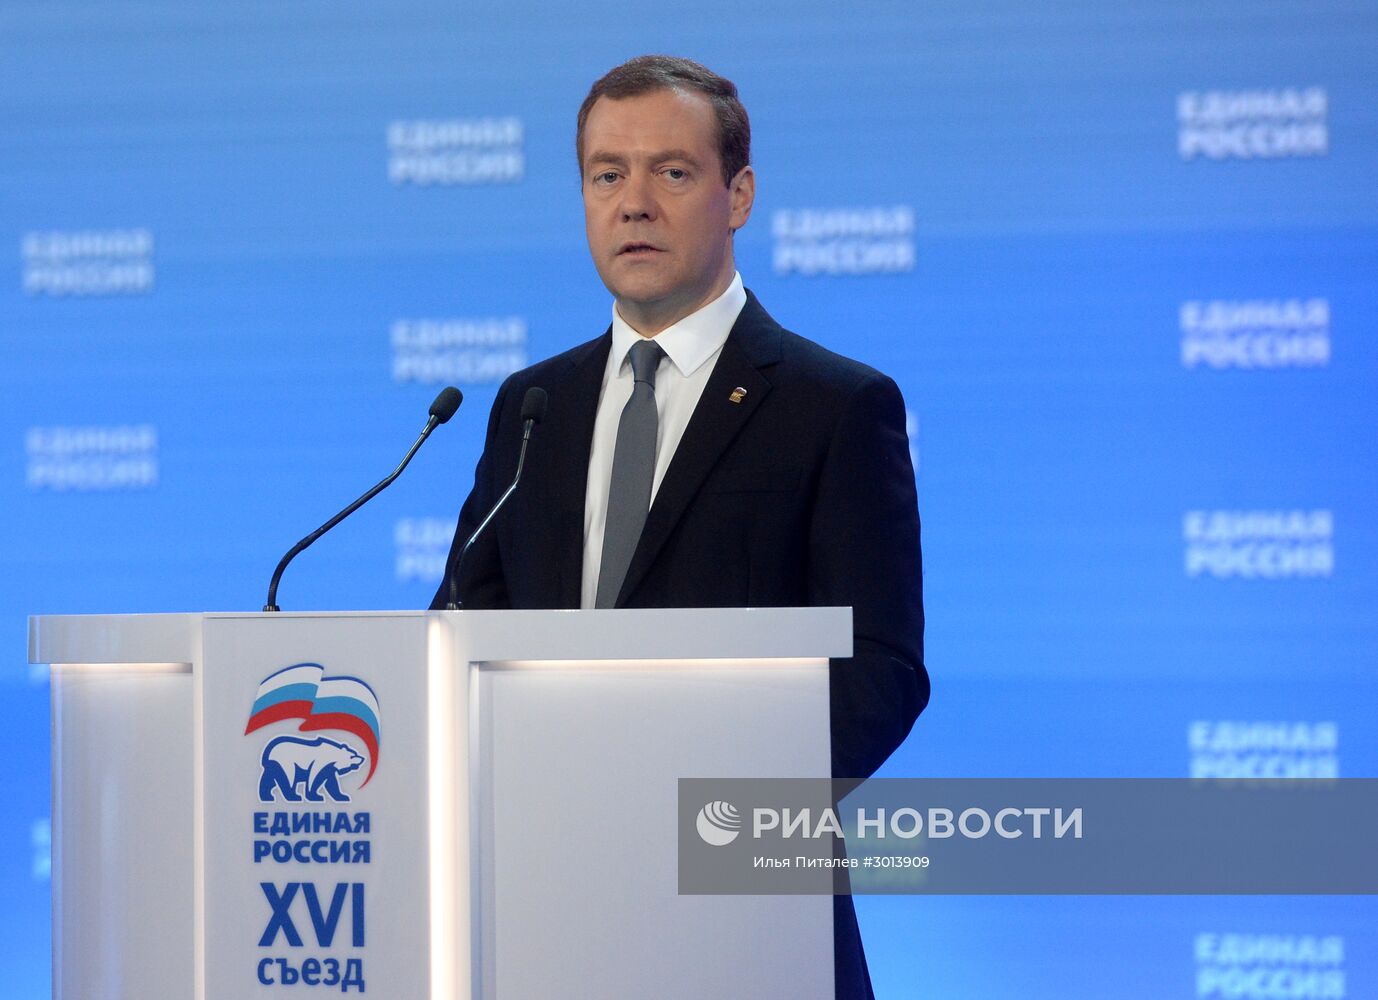 Премьер-министр РФ Д. Медведев принял участие в XVI Съезде политической партии "Единая Россия"